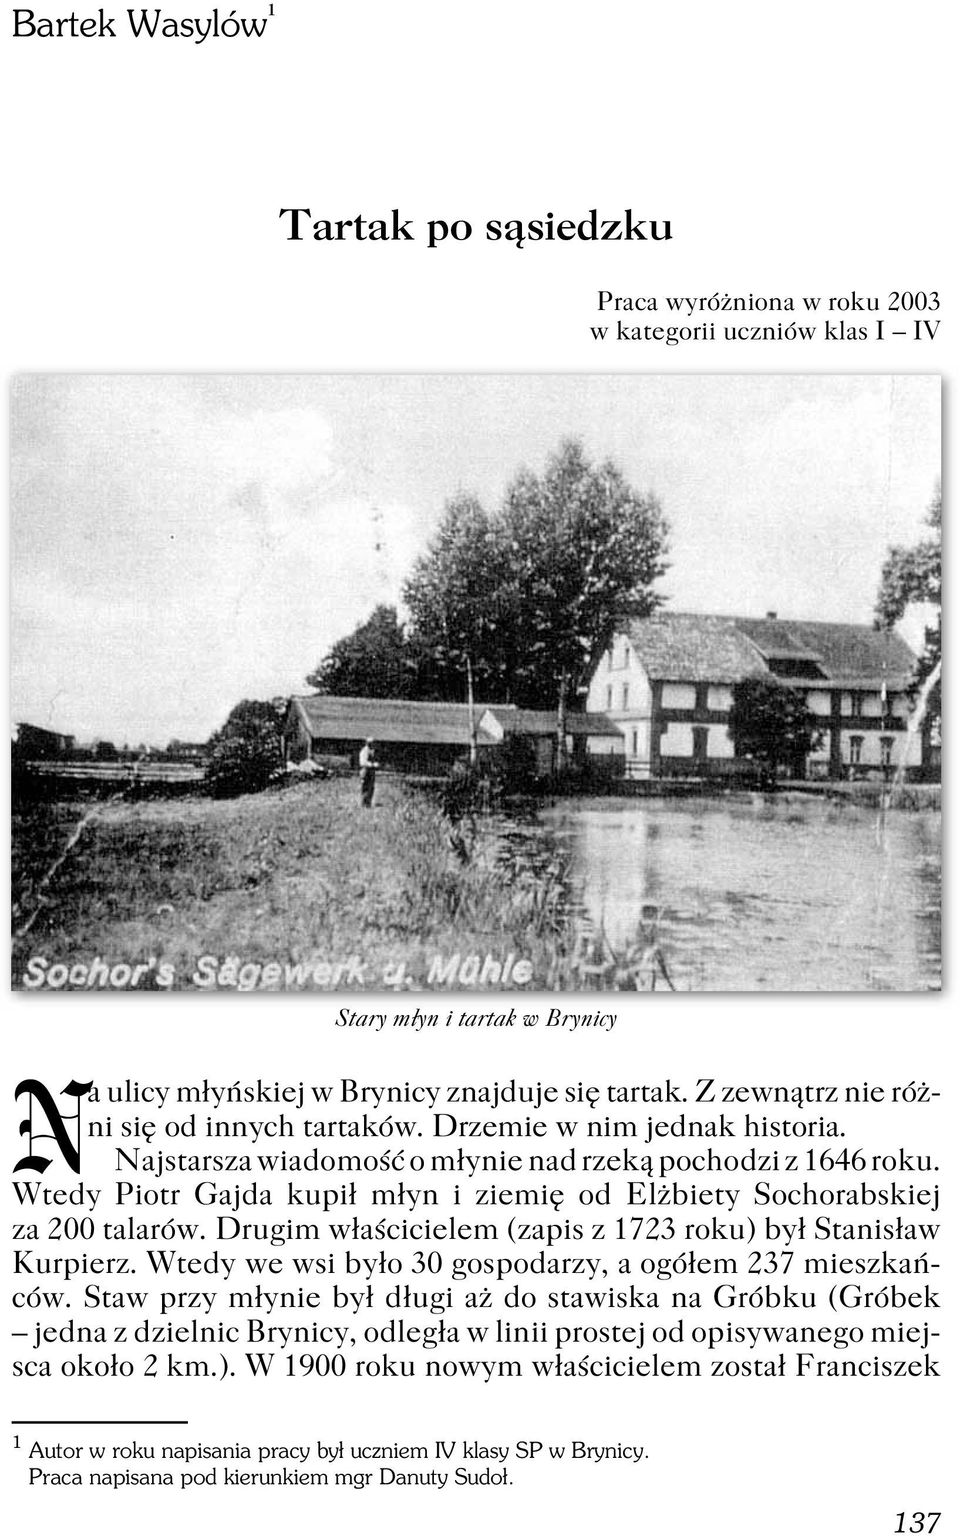 Wtedy Piotr Gajda kupił młyn i ziemię od Elżbiety Sochorabskiej za 200 talarów. Drugim właścicielem (zapis z 1723 roku) był Stanisław Kurpierz.